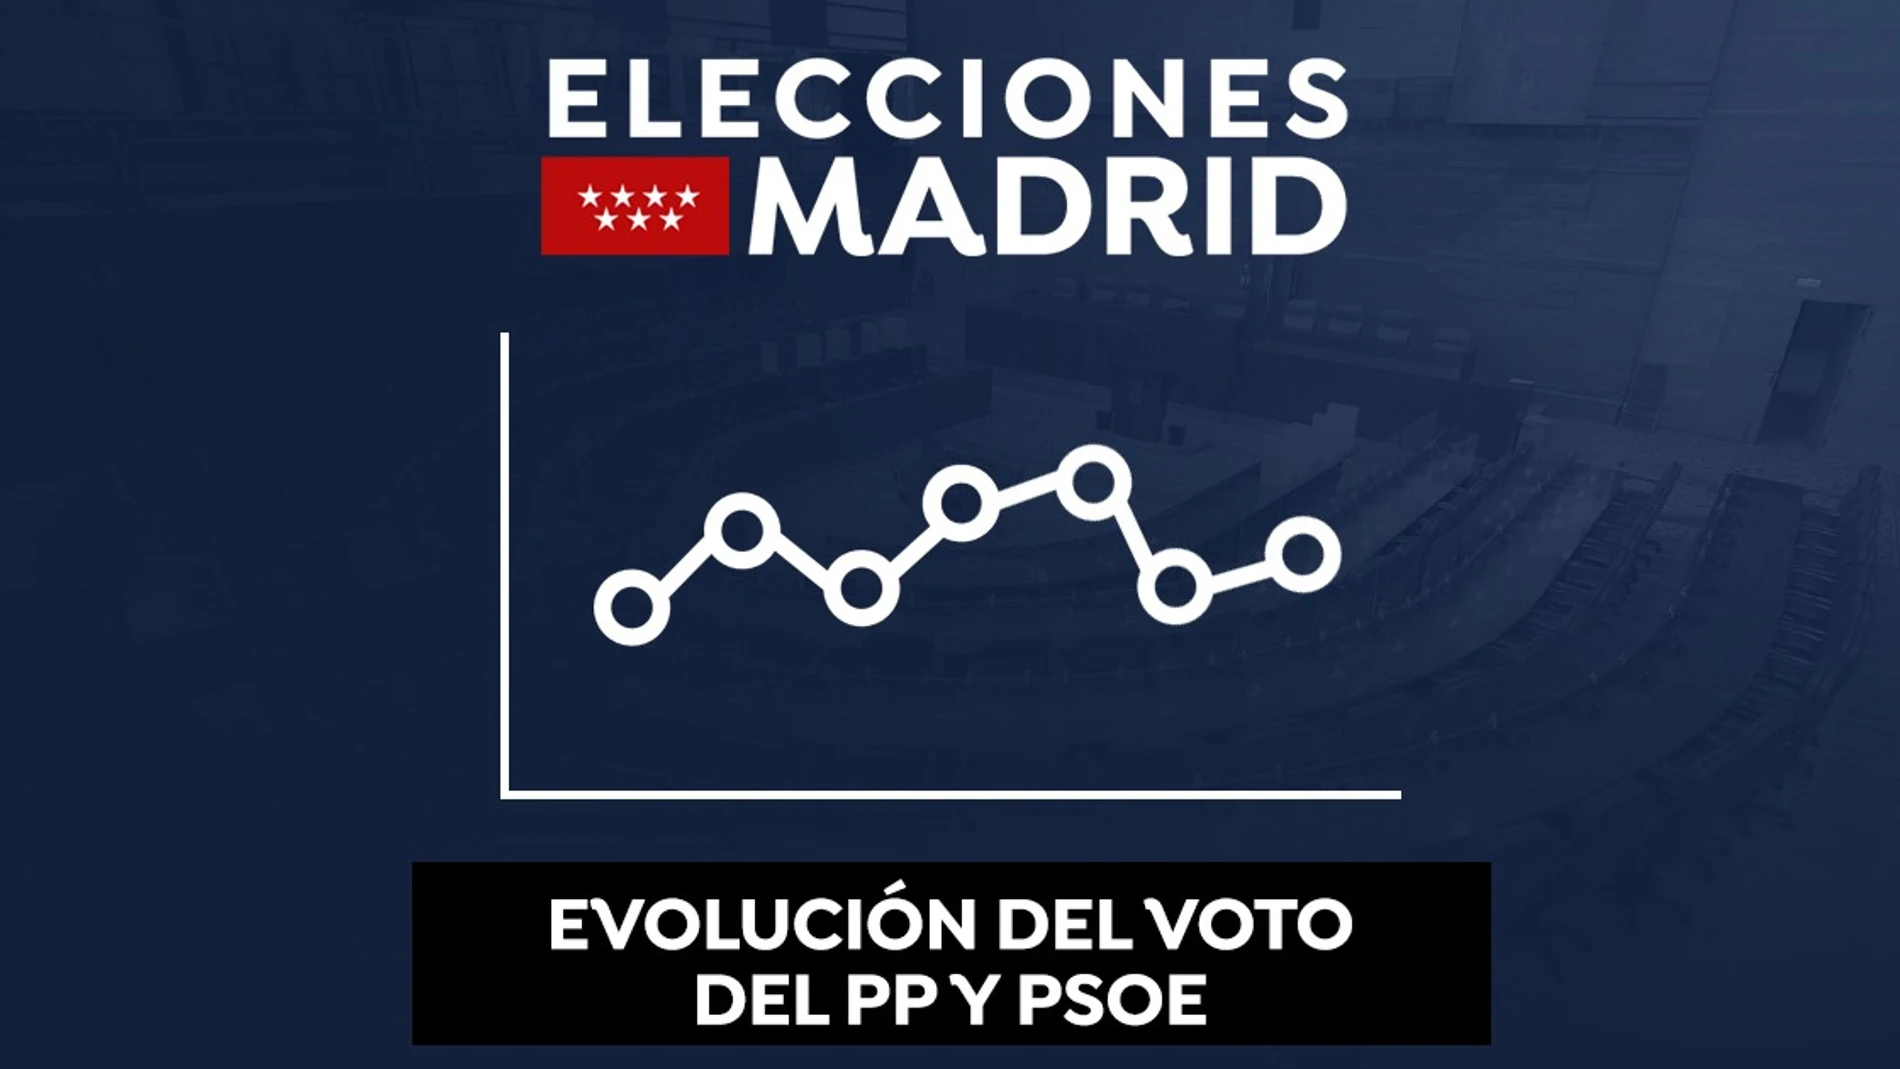 Evolución del voto del PSOE y PP desde 1983